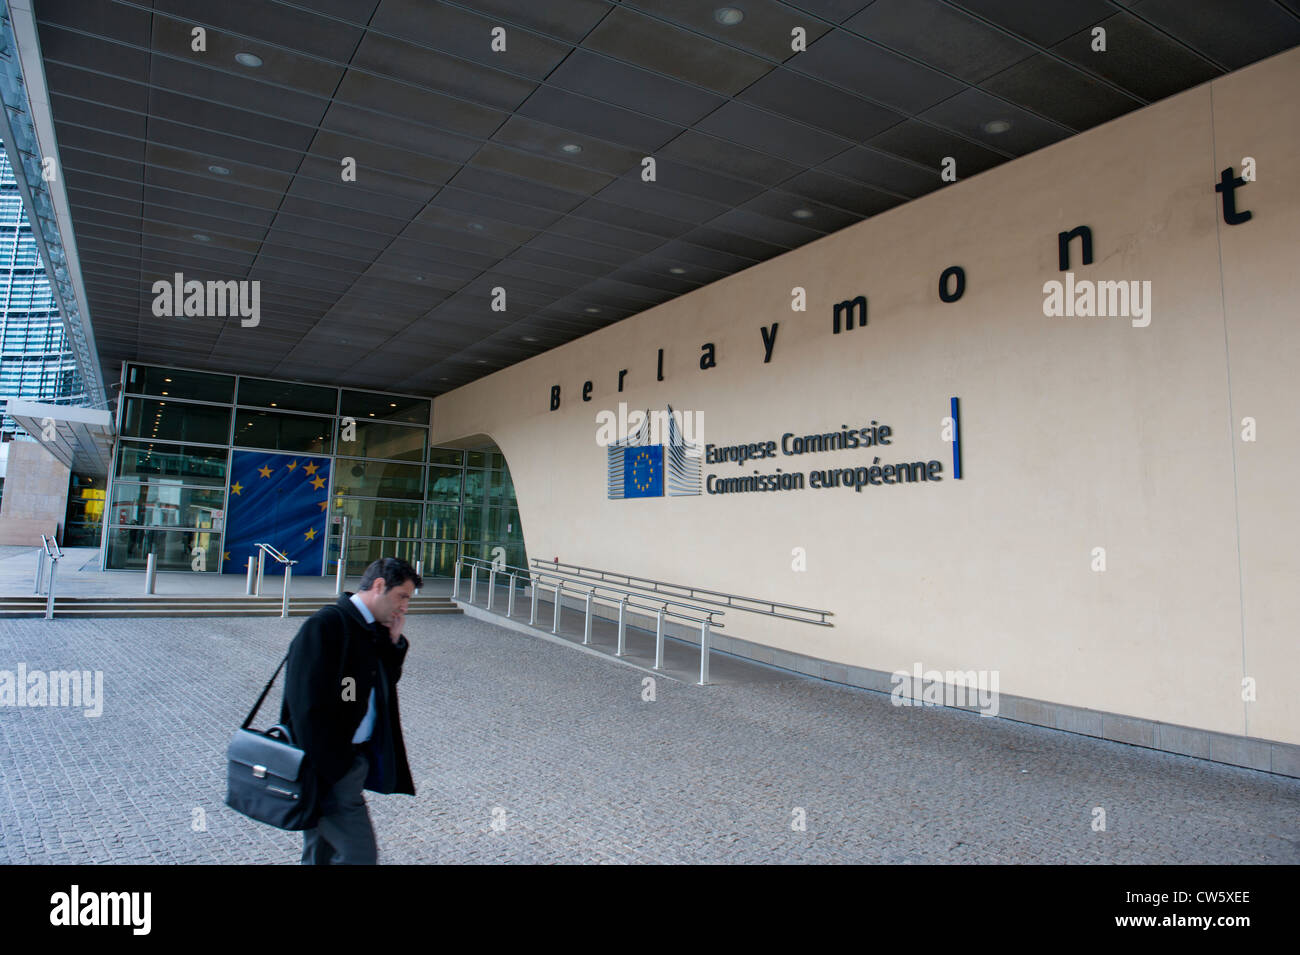 Le bâtiment du Berlaymont, siège de la Commission européenne, Bruxelles, Belgique Banque D'Images